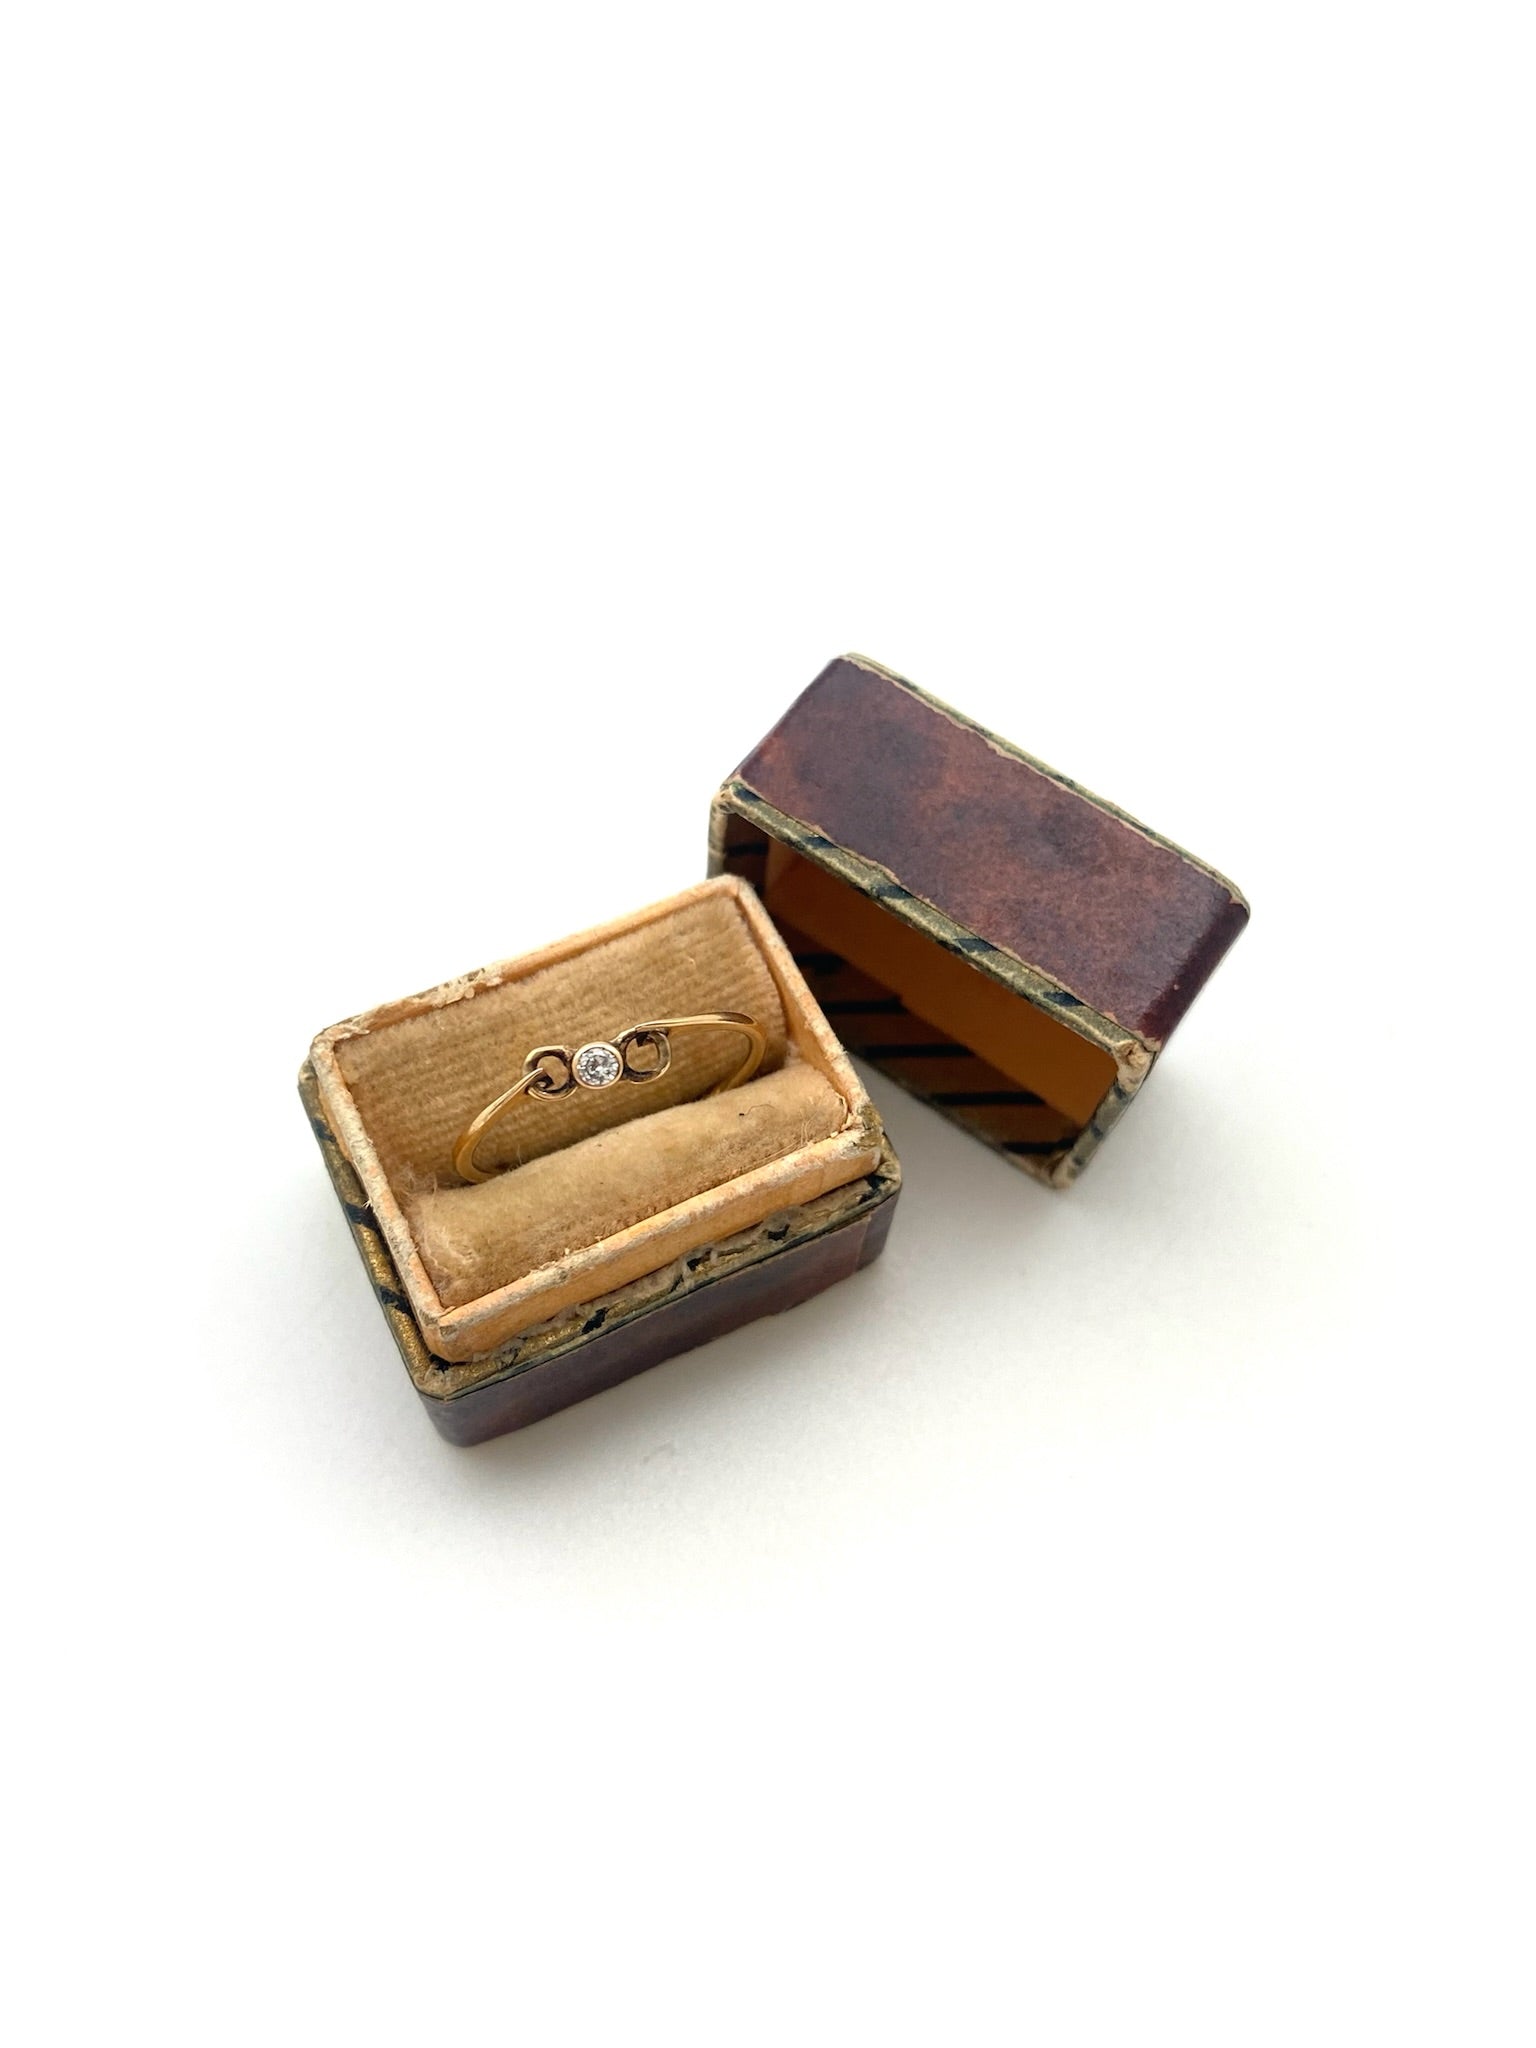 Dollie Spinner Diamond Ring (14K gold, size 6.5)